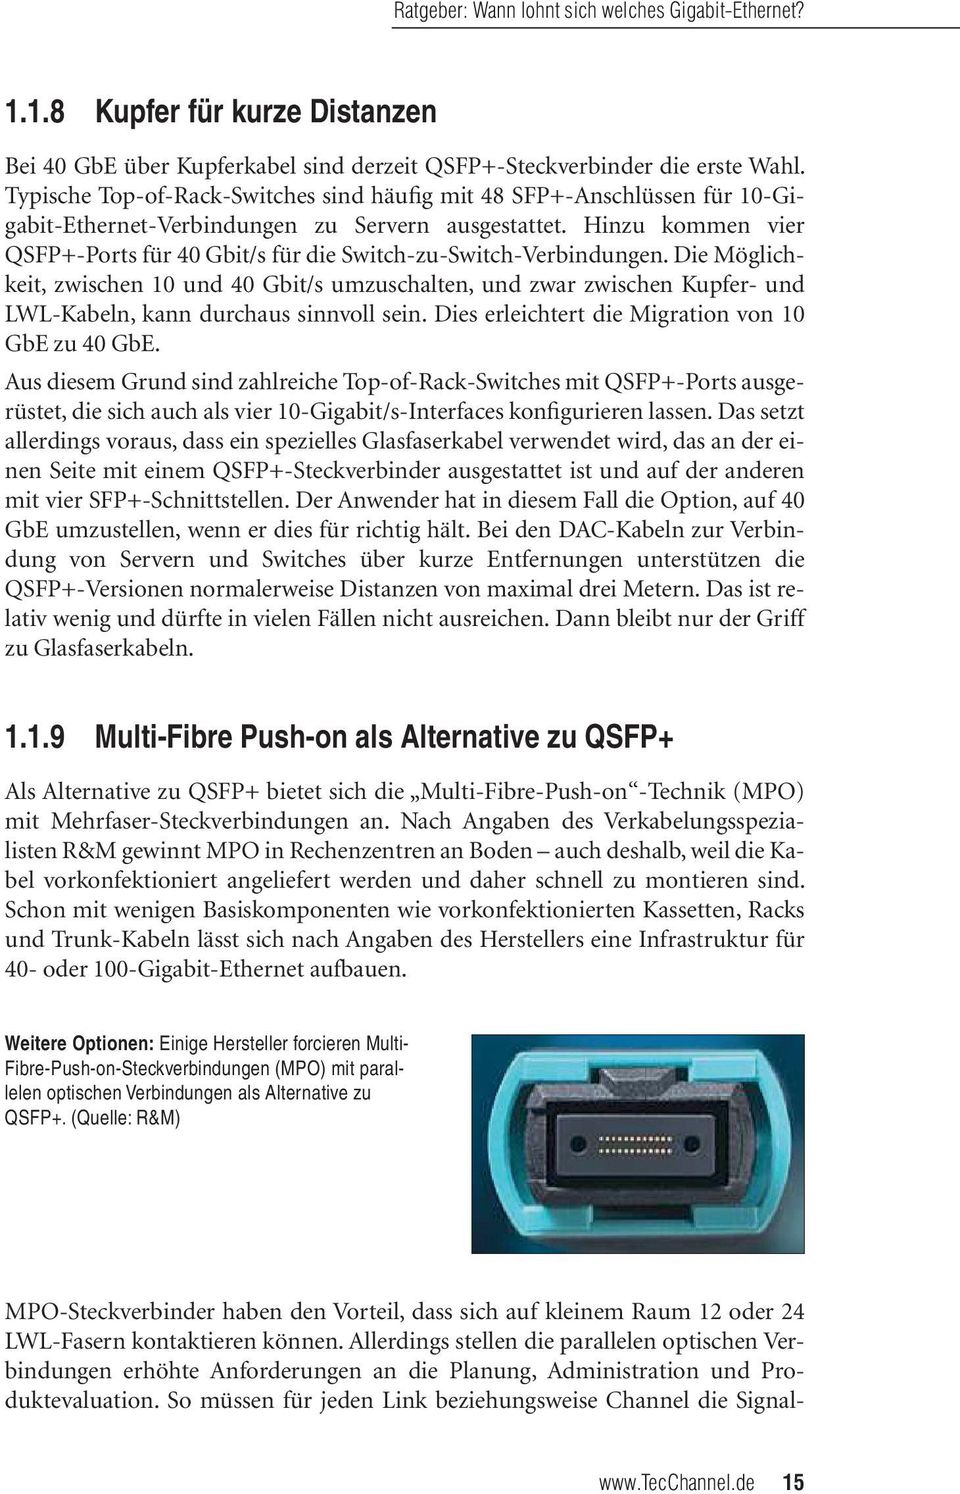 Hinzu kommen vier QSFP+-Ports für 40 Gbit/s für die Switch-zu-Switch-Verbindungen.